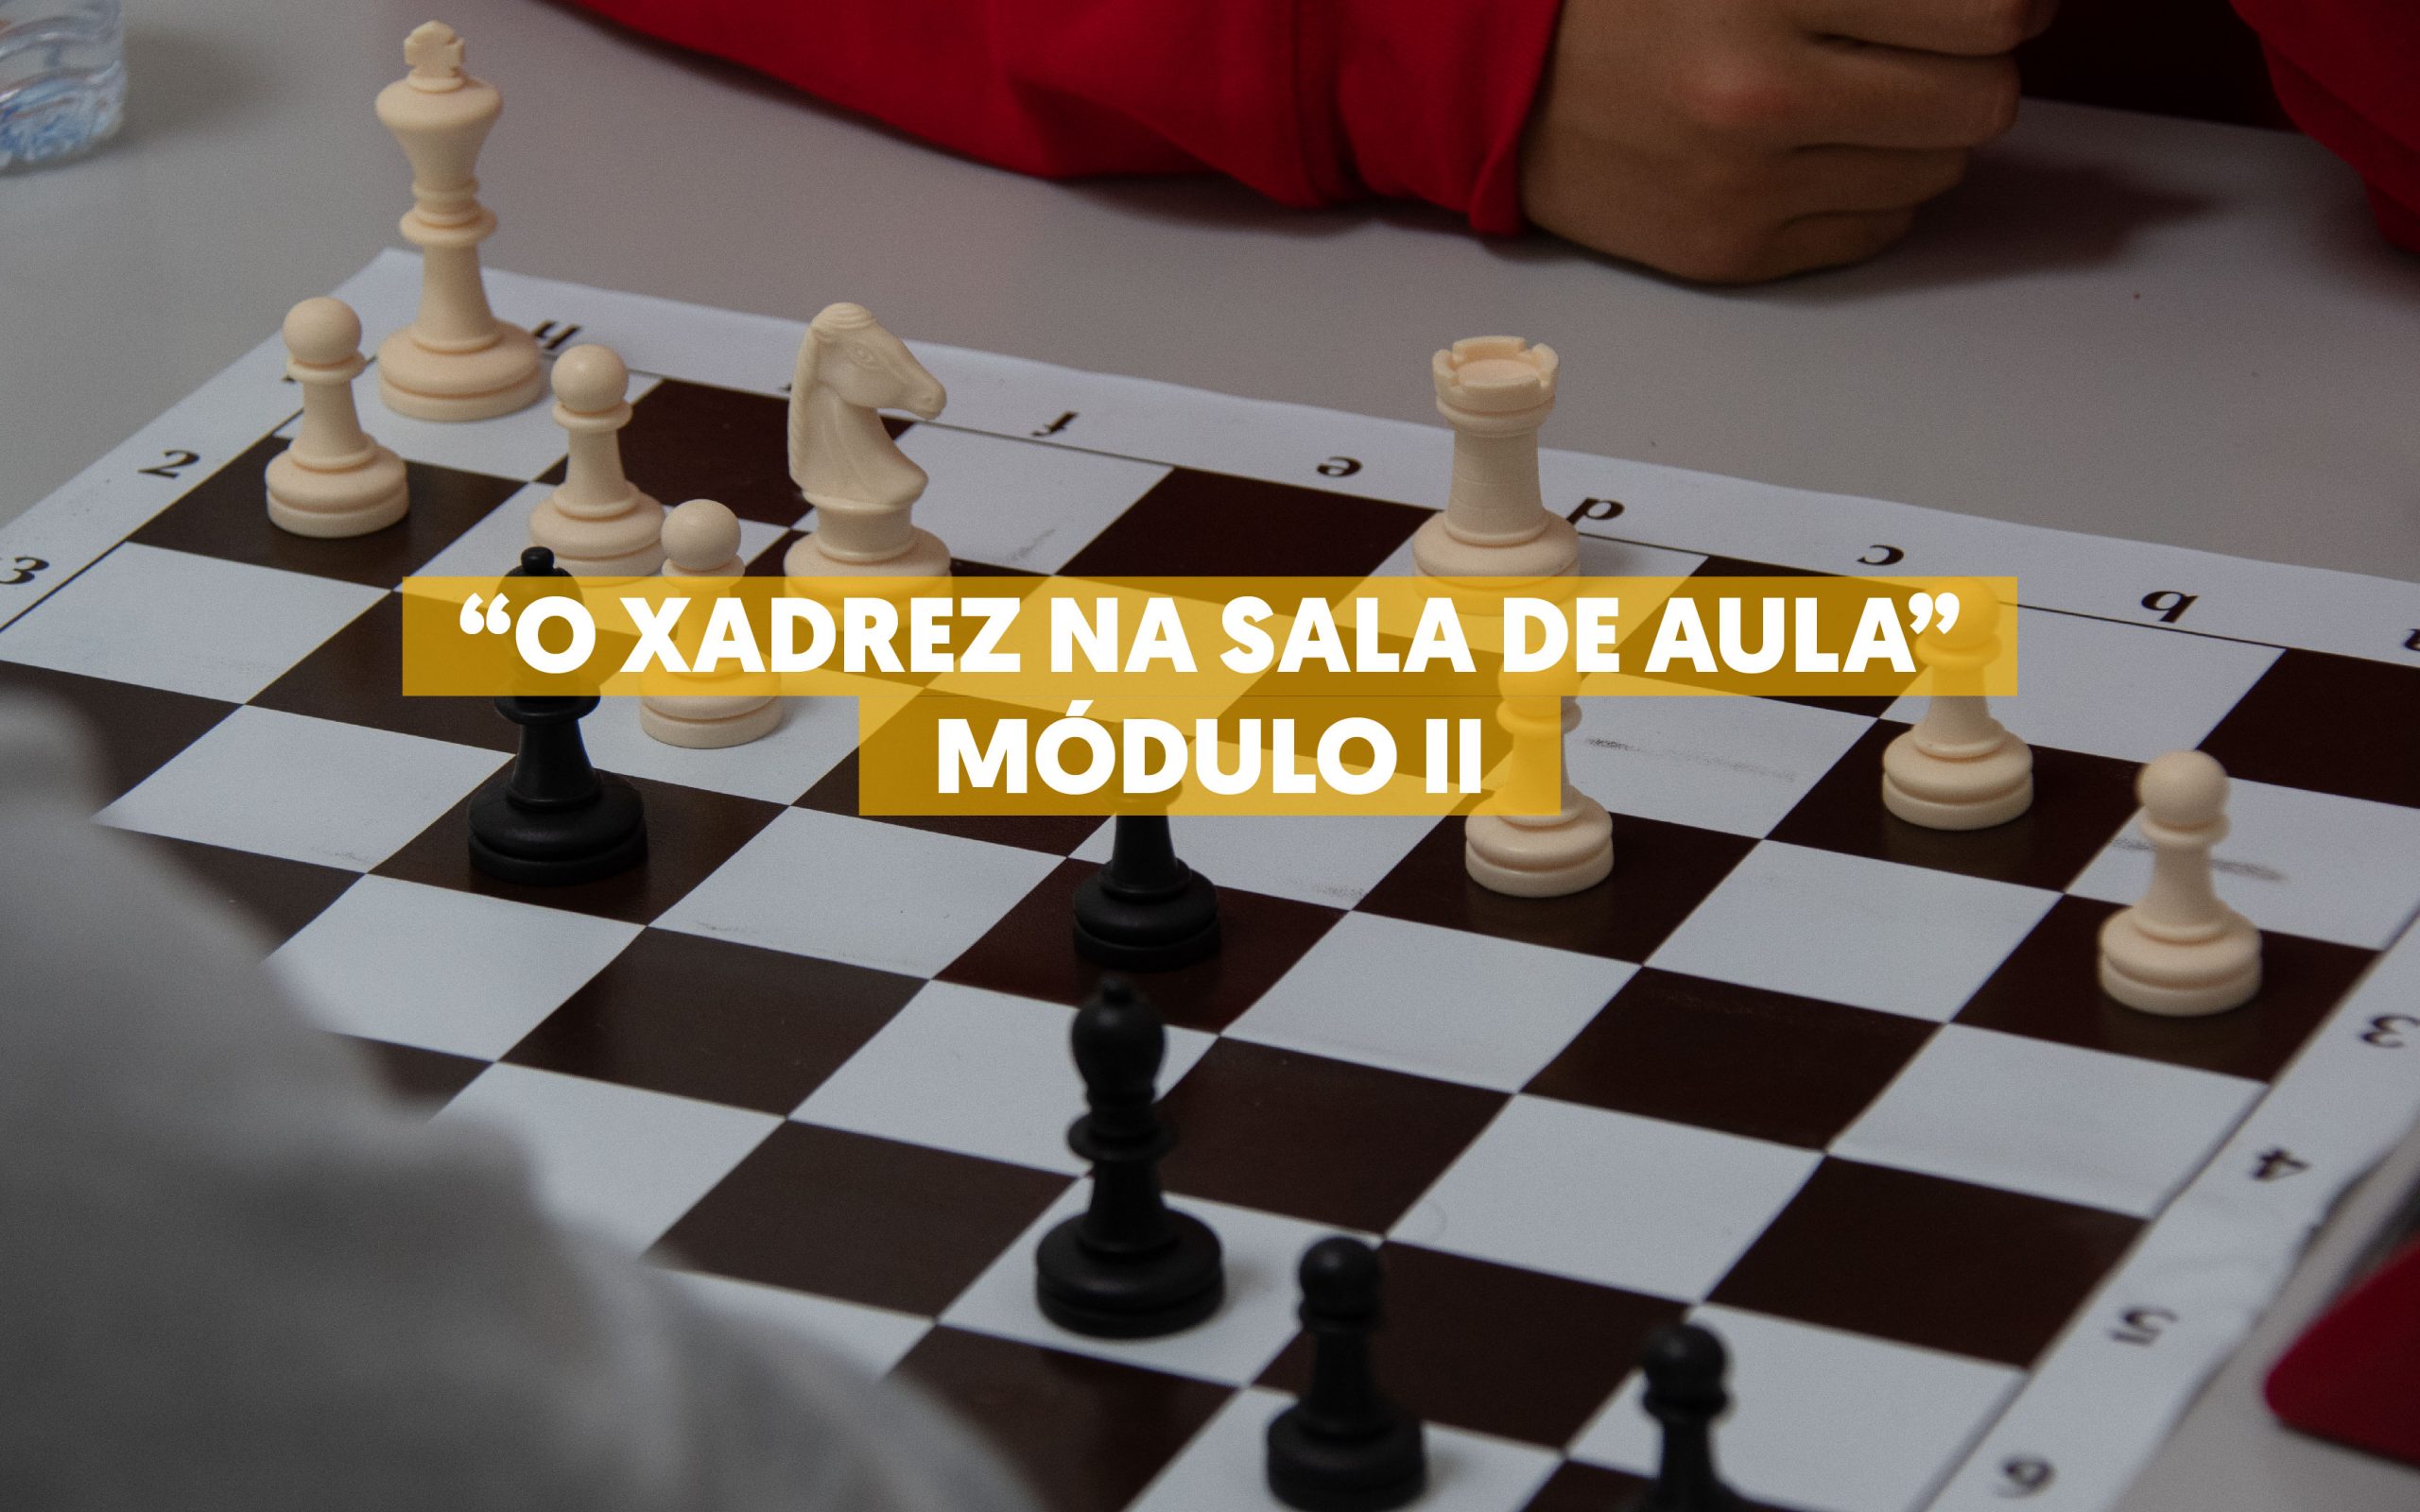 Workshop “O Xadrez na Sala de Aula – Módulo II” contou com mais de duas  dezenas de participantes - Câmara Municipal de Felgueiras